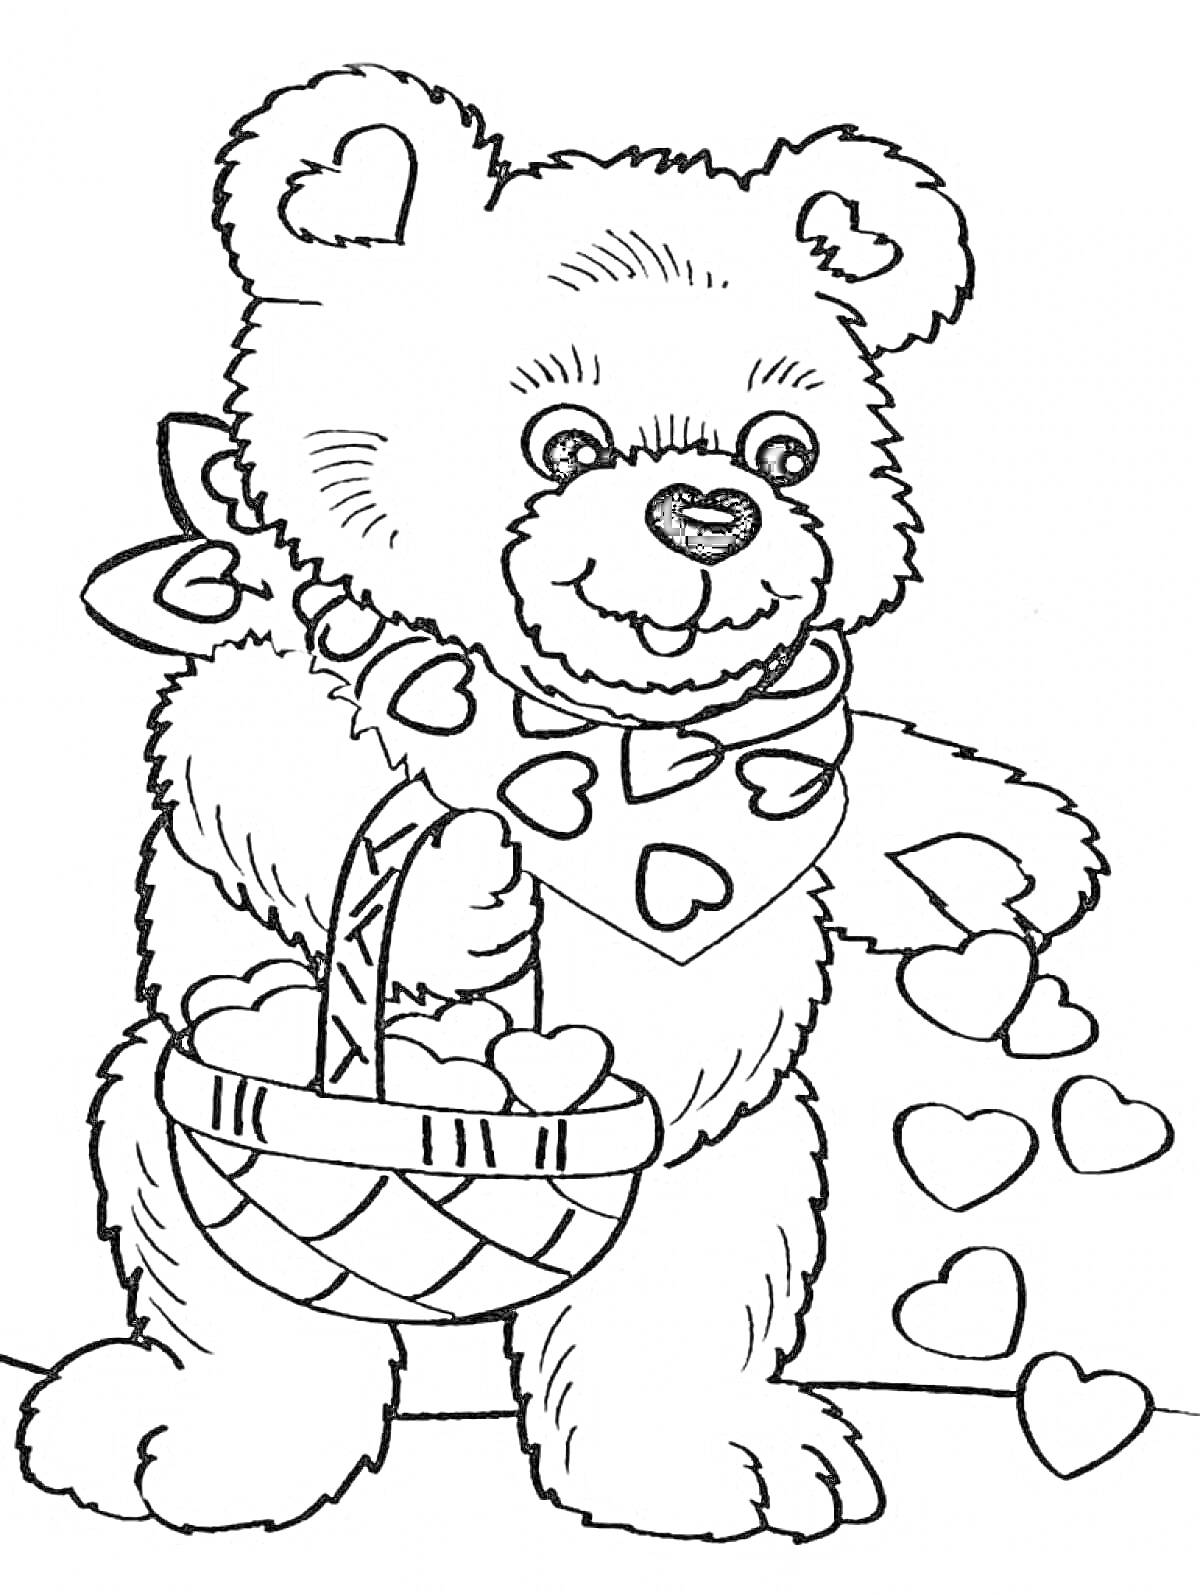 Раскраска Медвежонок Тедди с шарфом в сердечках, корзинкой и упавшими сердечками